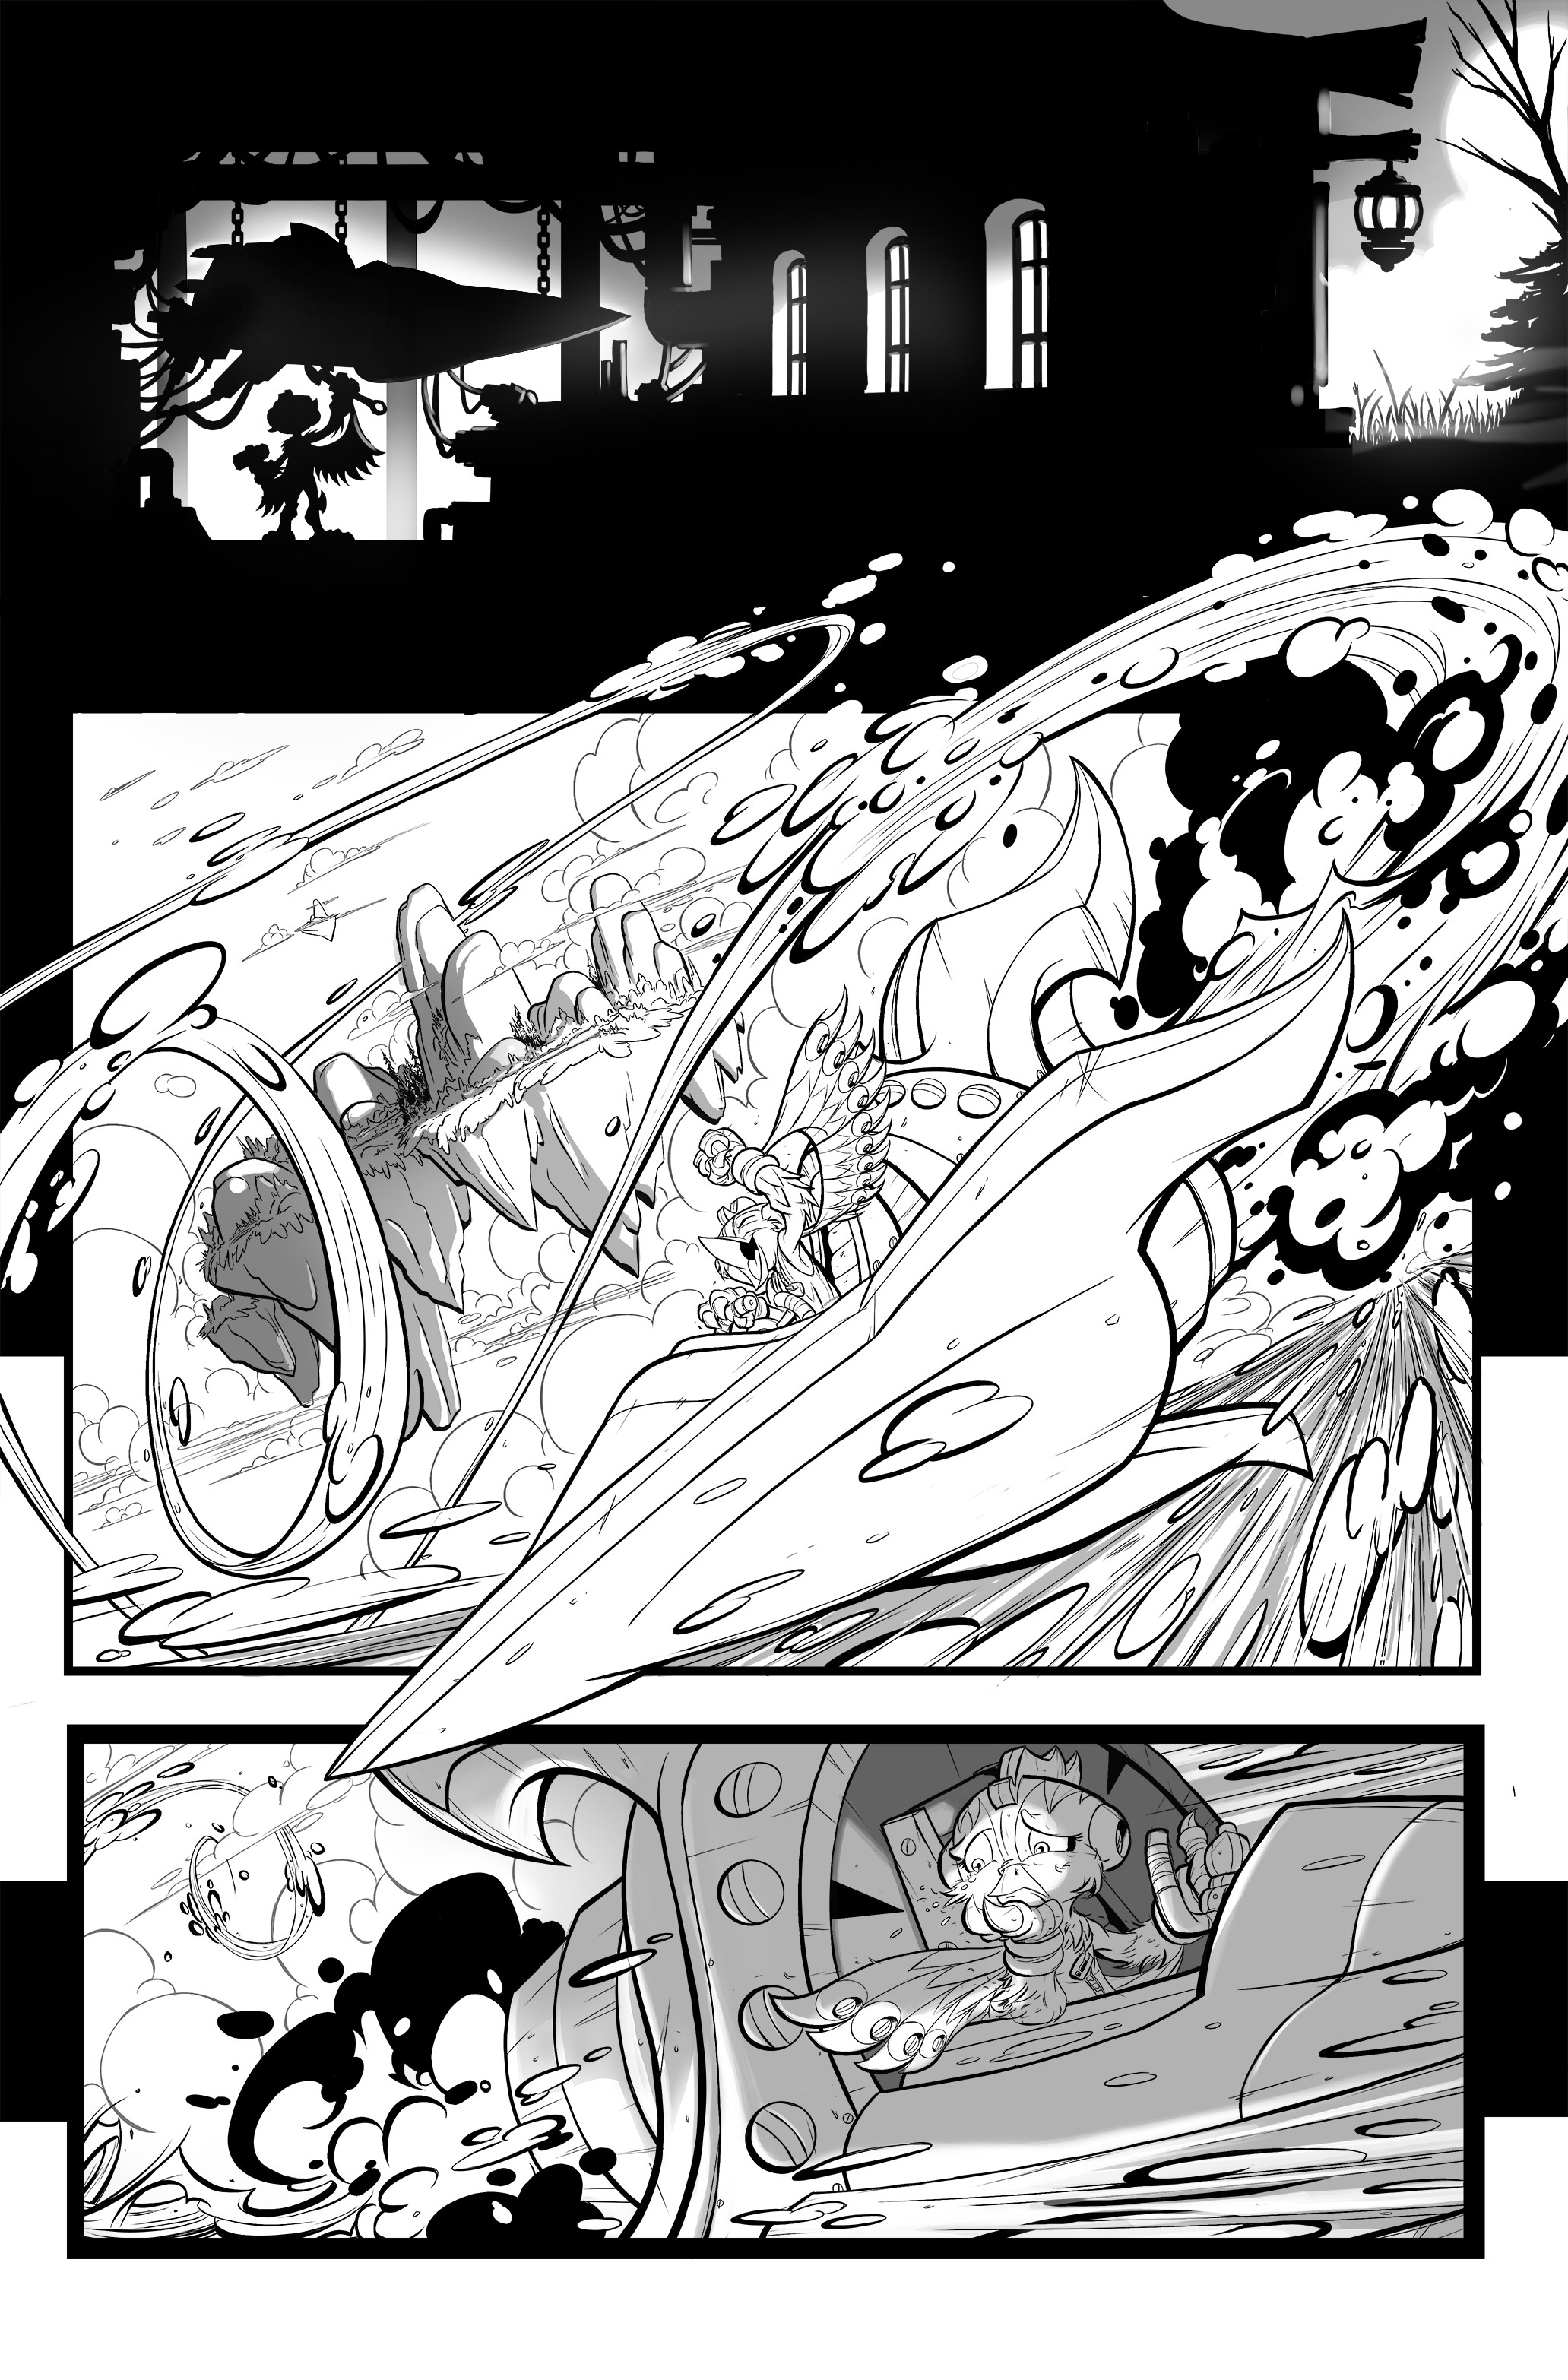 Stormblade Origin Story pg 03 of 04